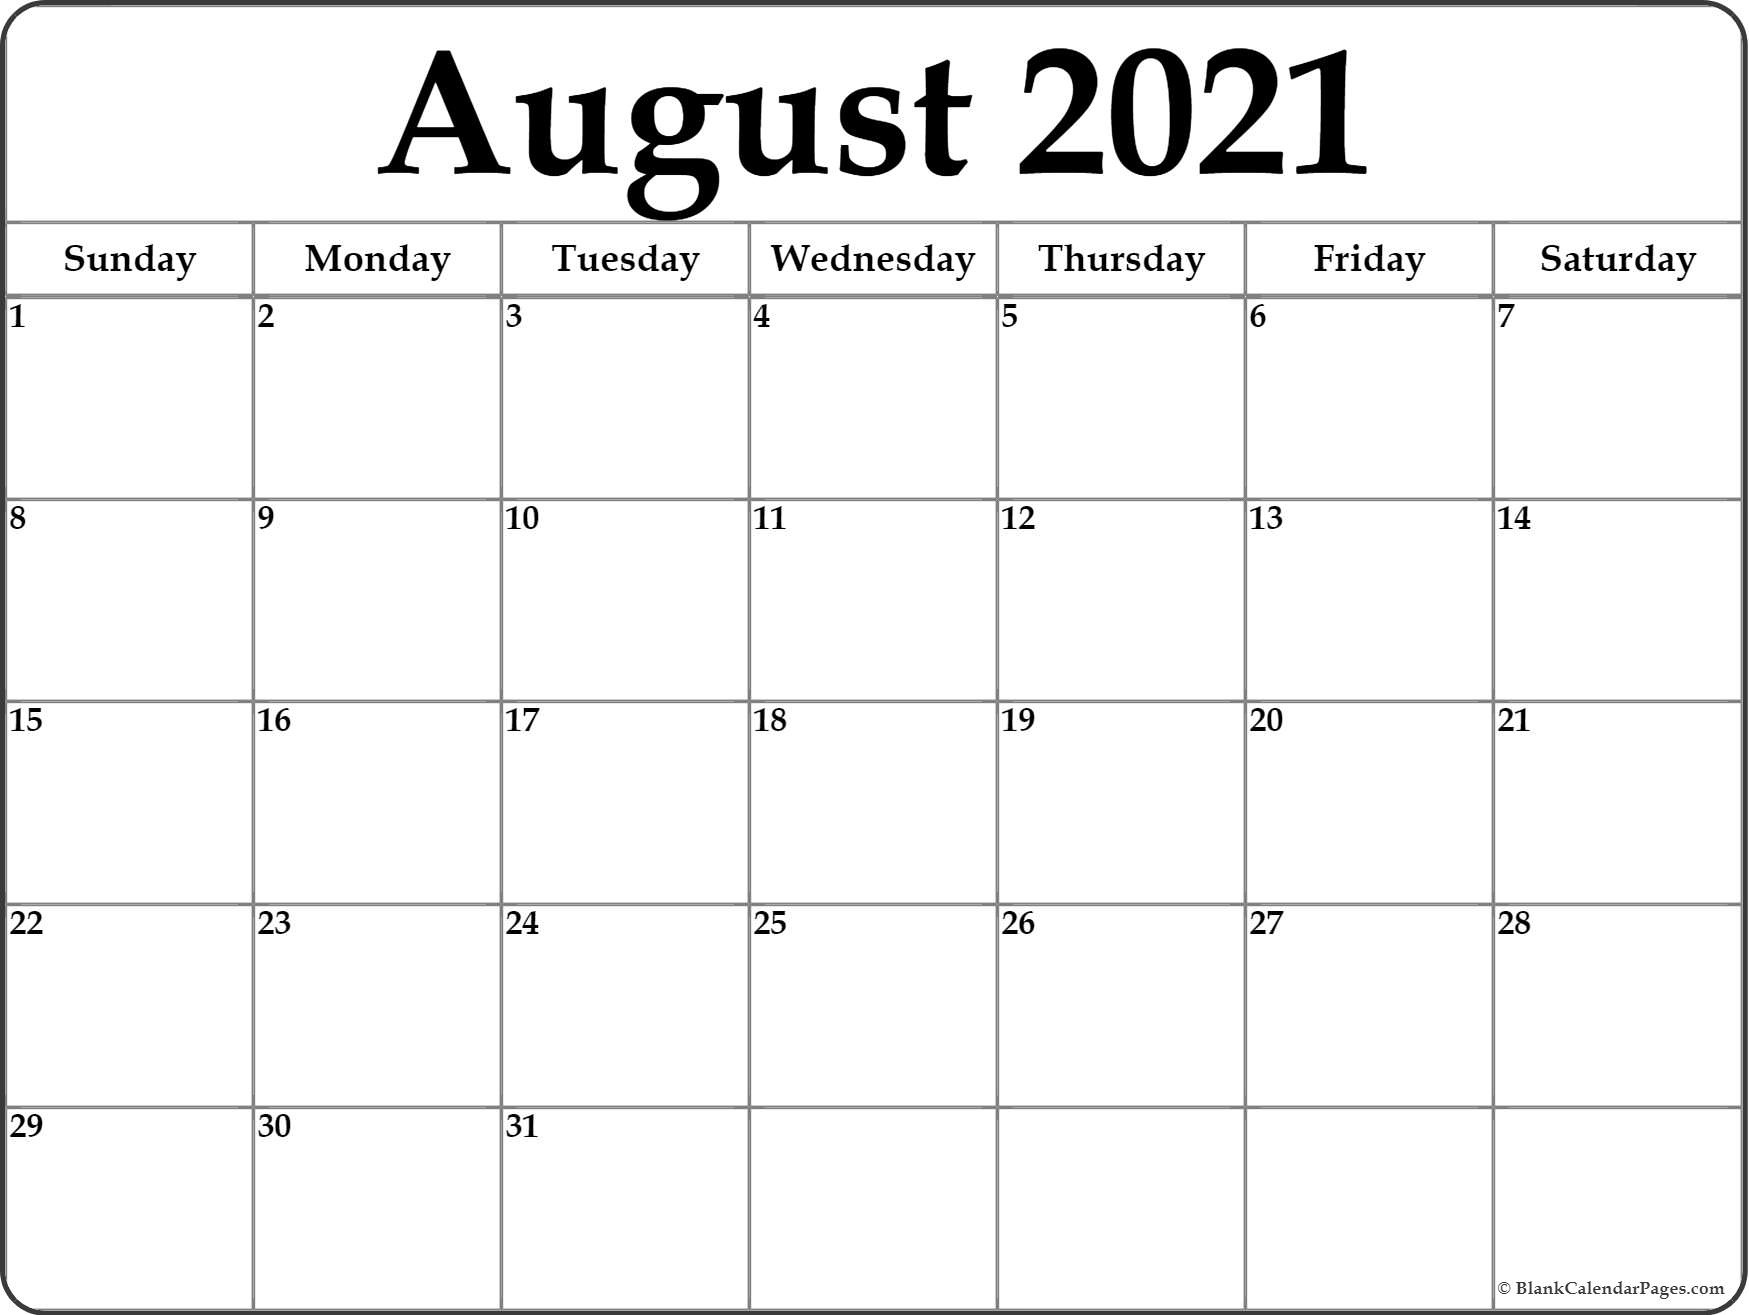 Take August September Calendar 2021